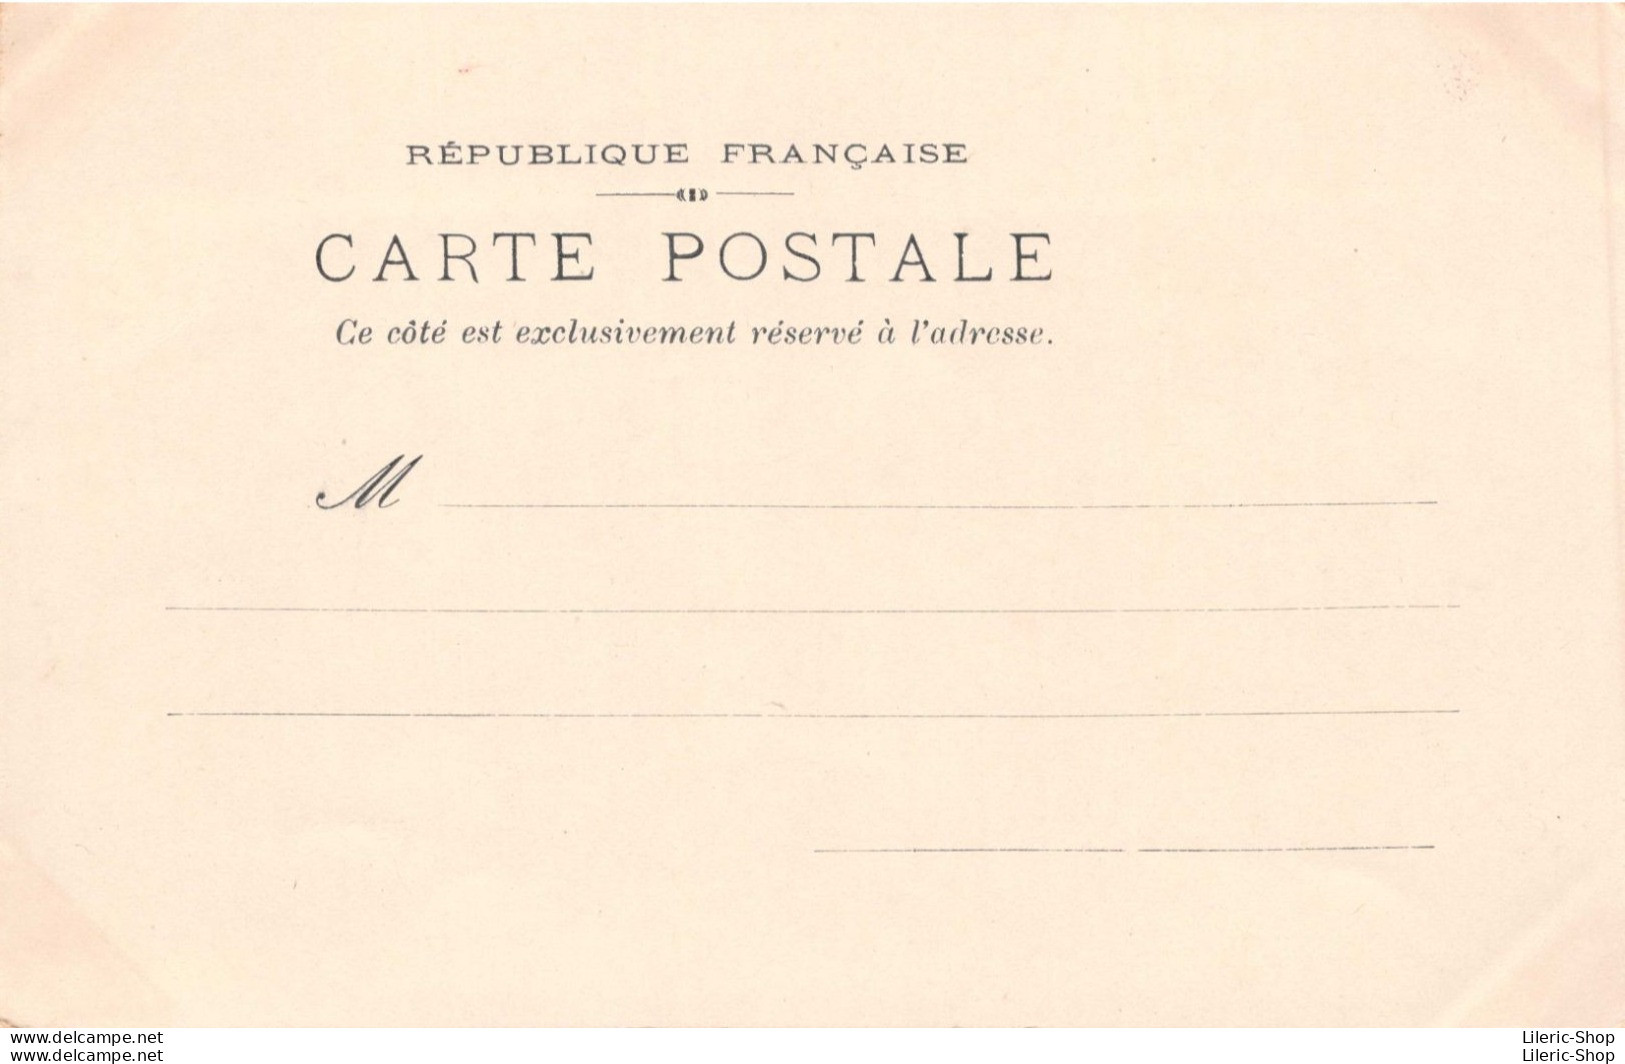 ART NOUVEAU - STYLE KIRCHNER - BELLE JEUNE FEMME - "LE DAUPHINÉ" - CPR - 1900-1949